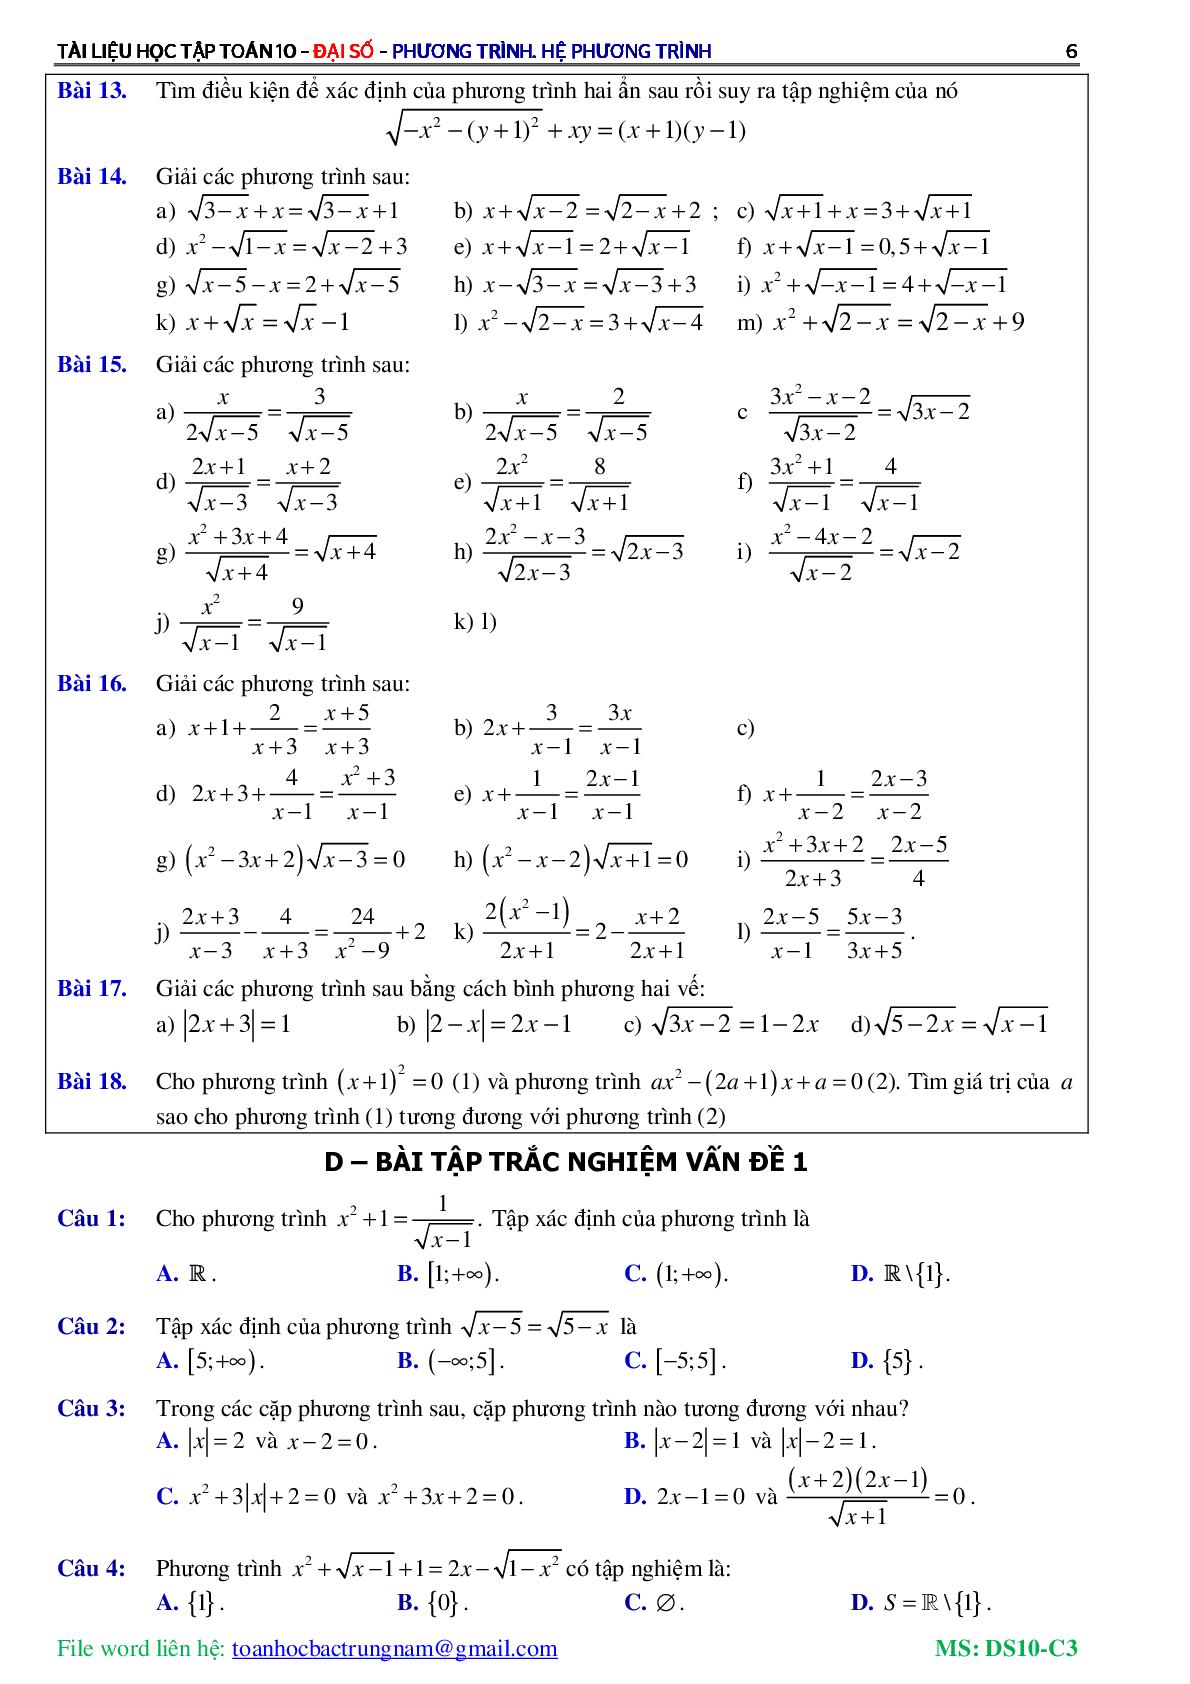 Lý thuyết, bài tập về Phương trình và hệ phương trình có đáp án (trang 7)